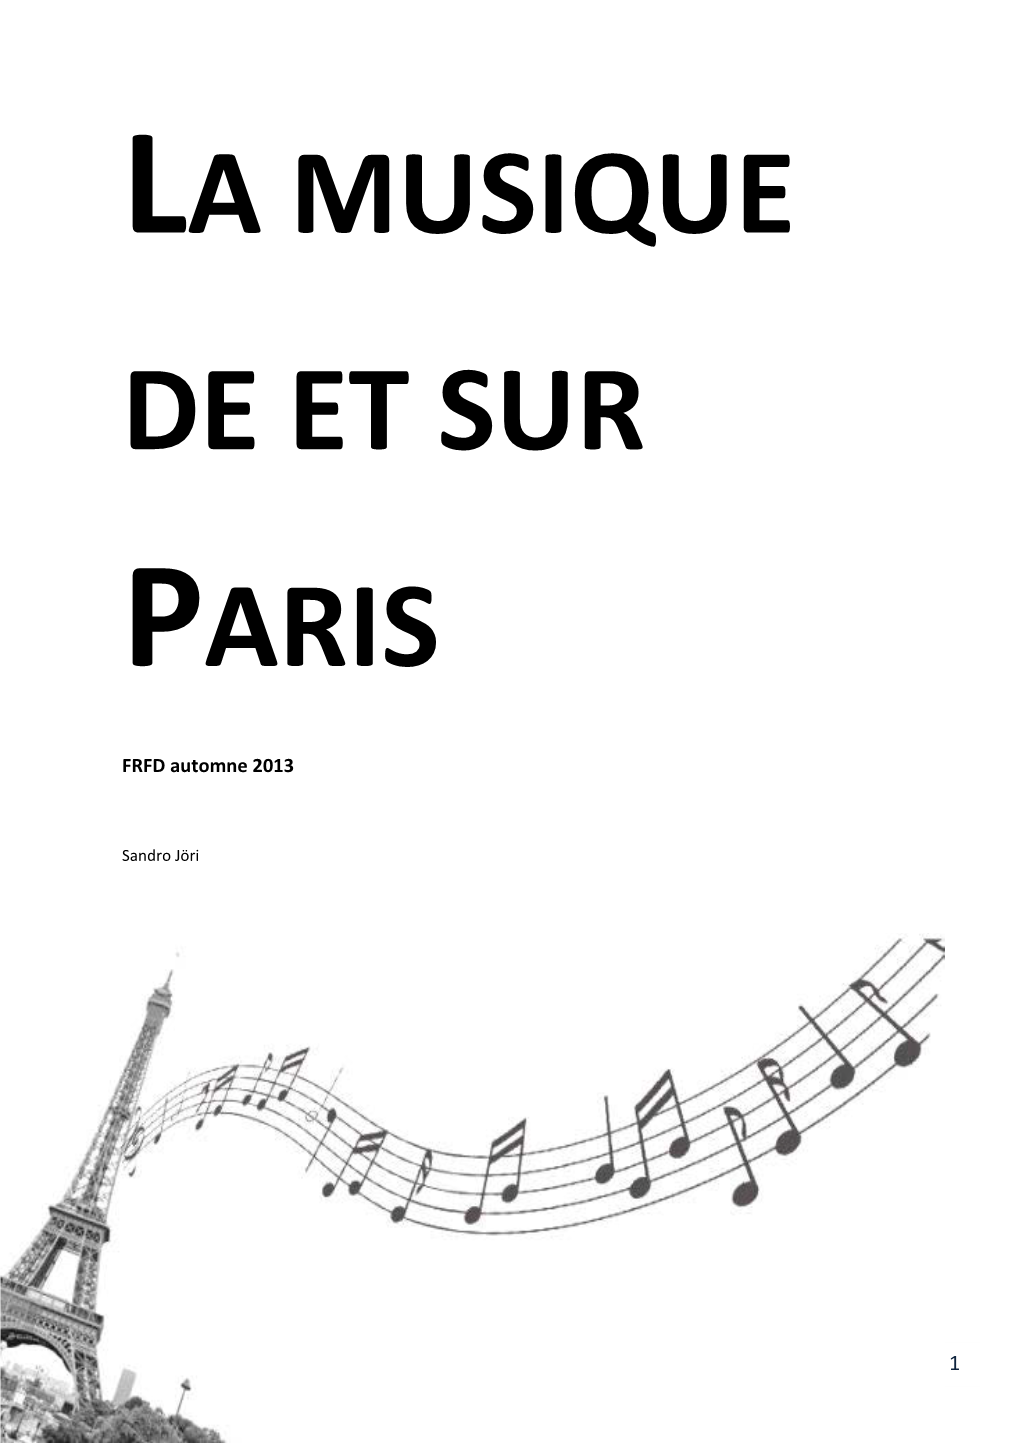 Joe Dassin – Les Champs-Élysées